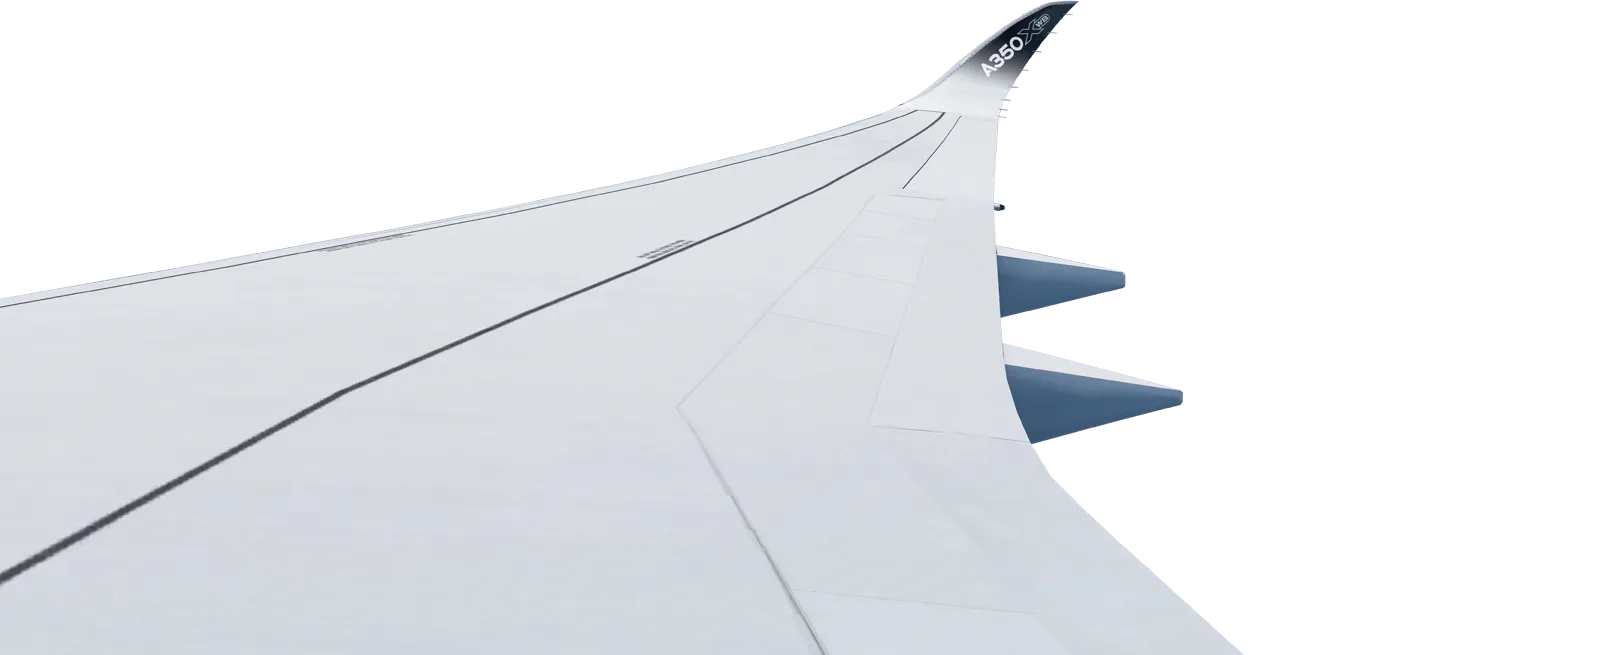 A350 Wing in Infinite Flight